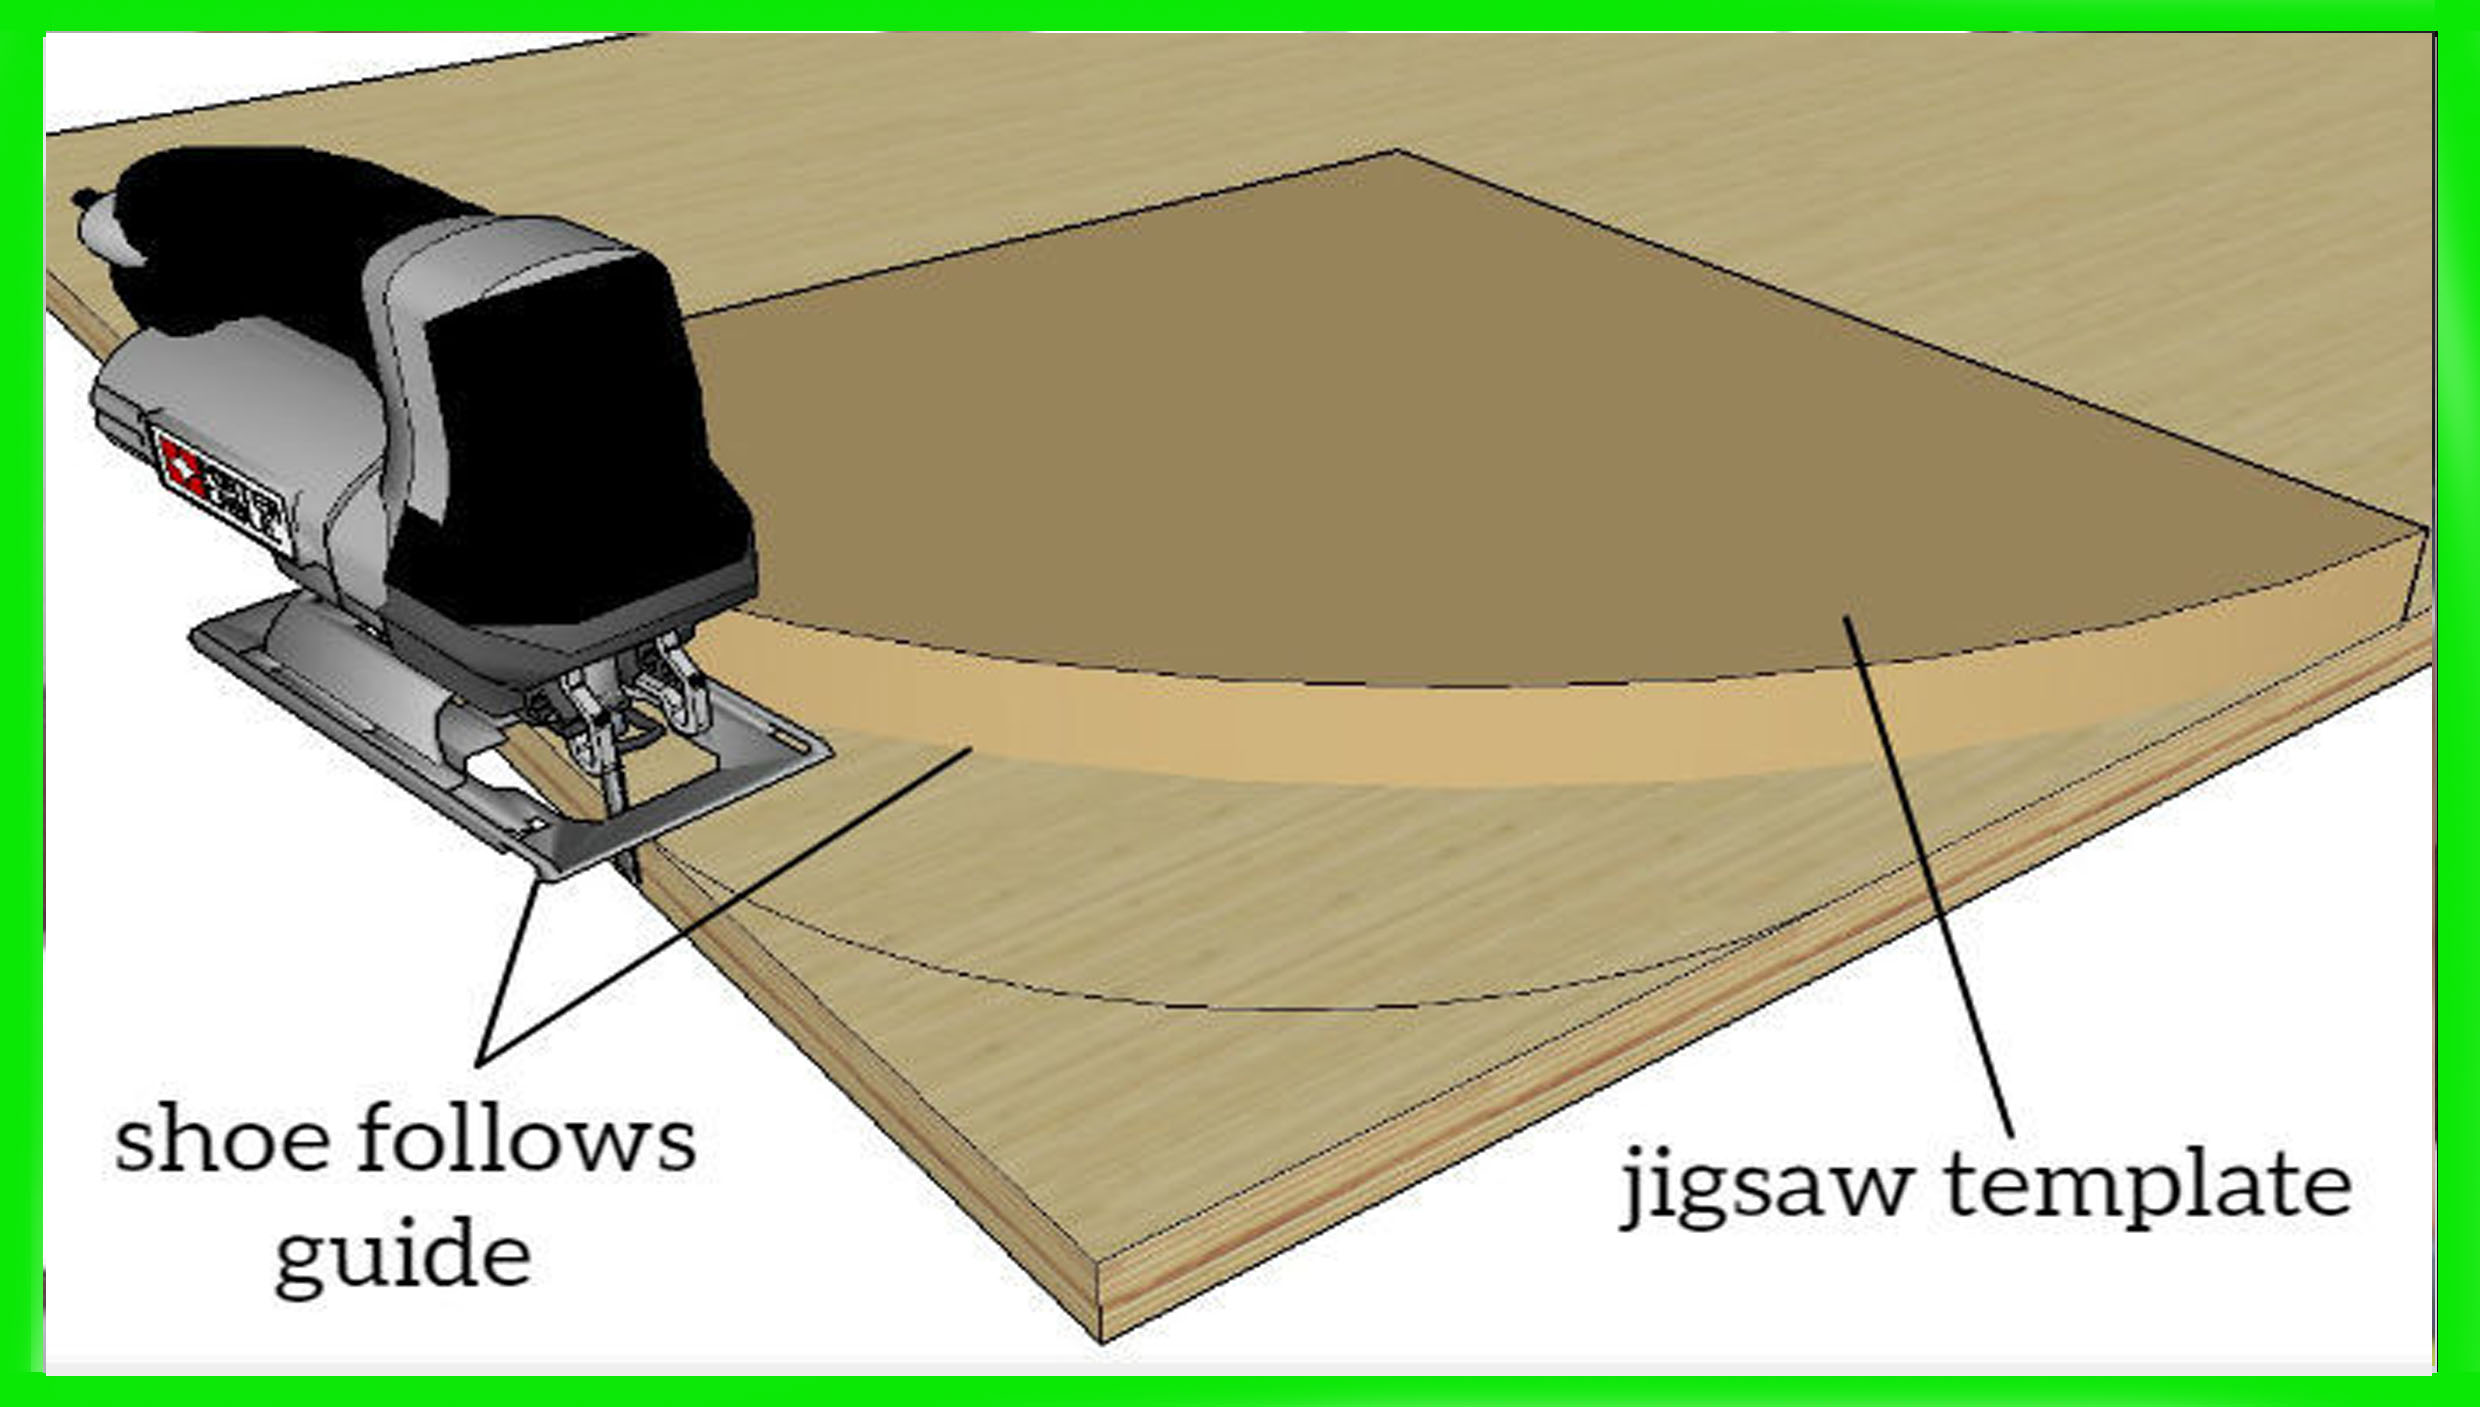 How to Use a Jigsaw